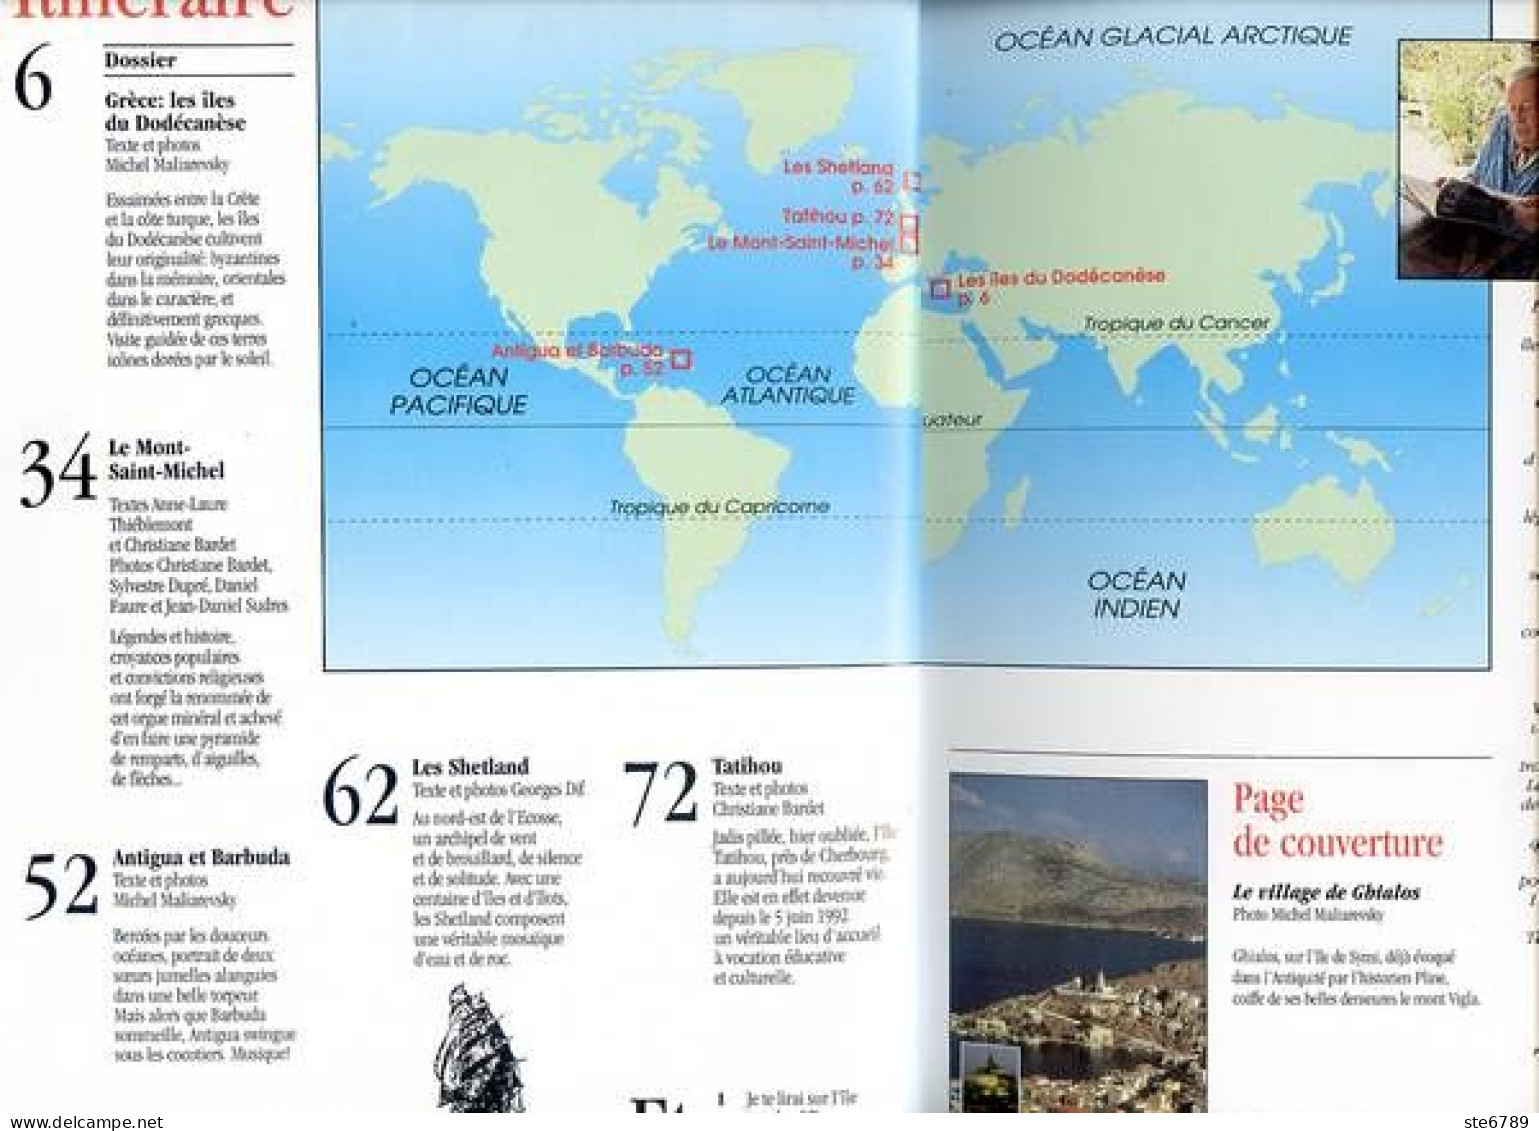 ILES MAGAZINE N° 39 Les Shetland , Antigua Et Barbuda , Tatihou ,  Grece Iles Dodécanèse , Mont St Michel - Géographie